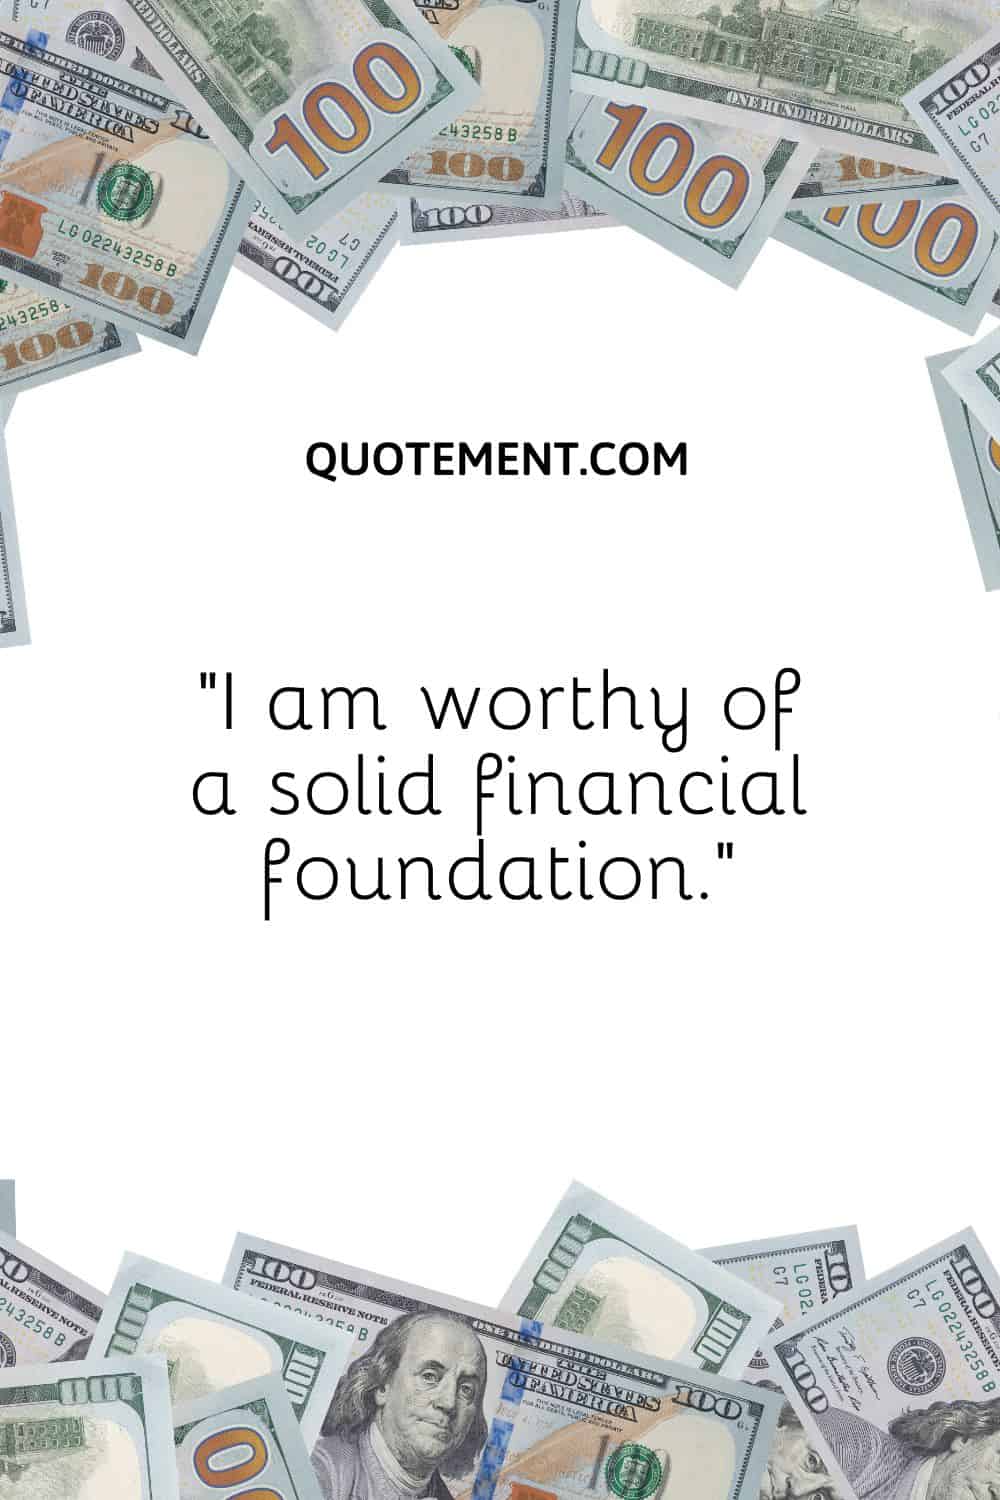 “I am worthy of a solid financial foundation.”